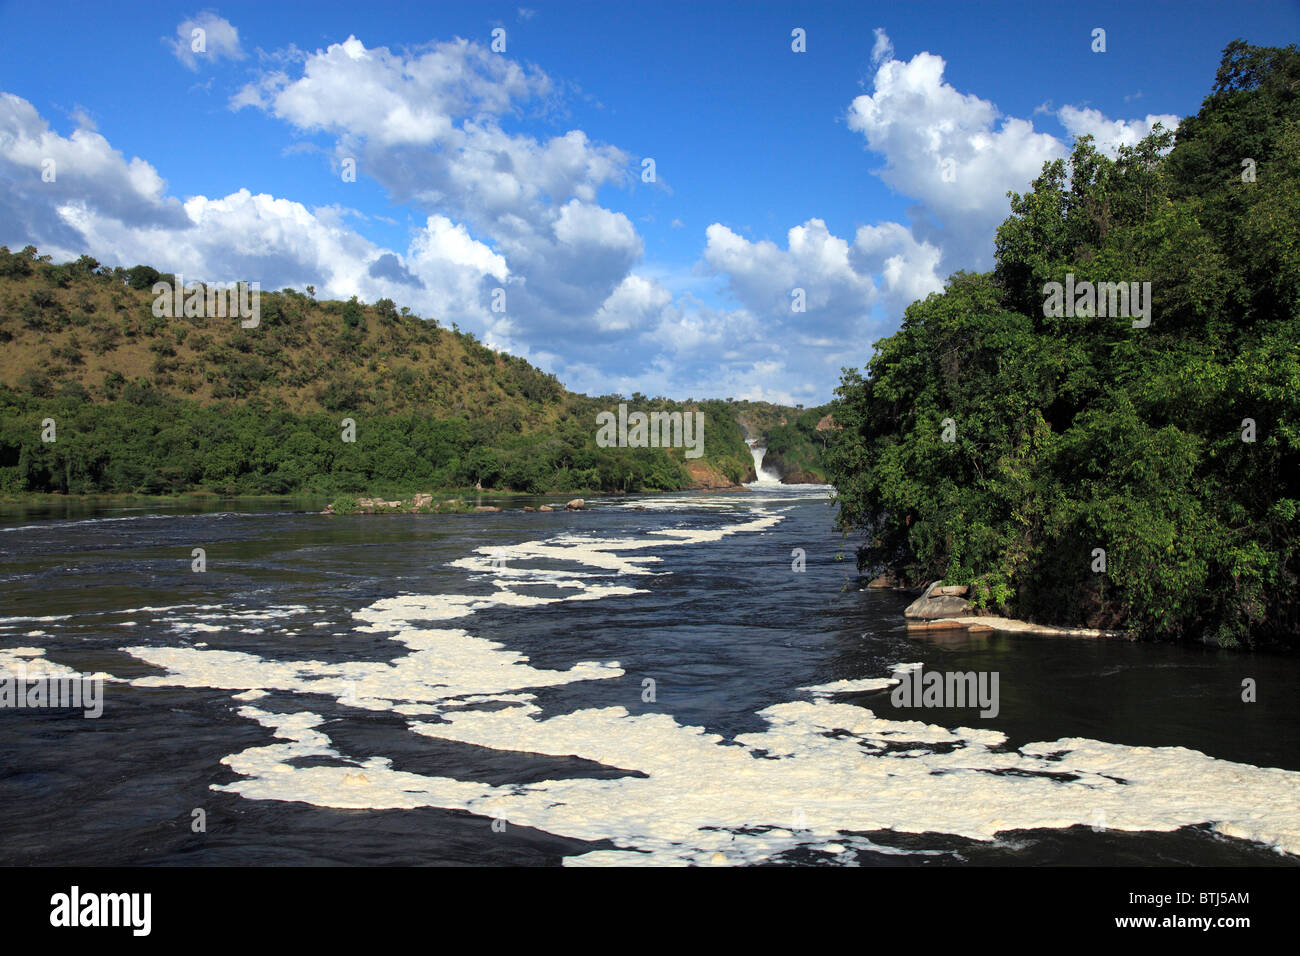 White Nile River dans le parc national de Murchison Falls, en Ouganda, en Afrique de l'Est Banque D'Images